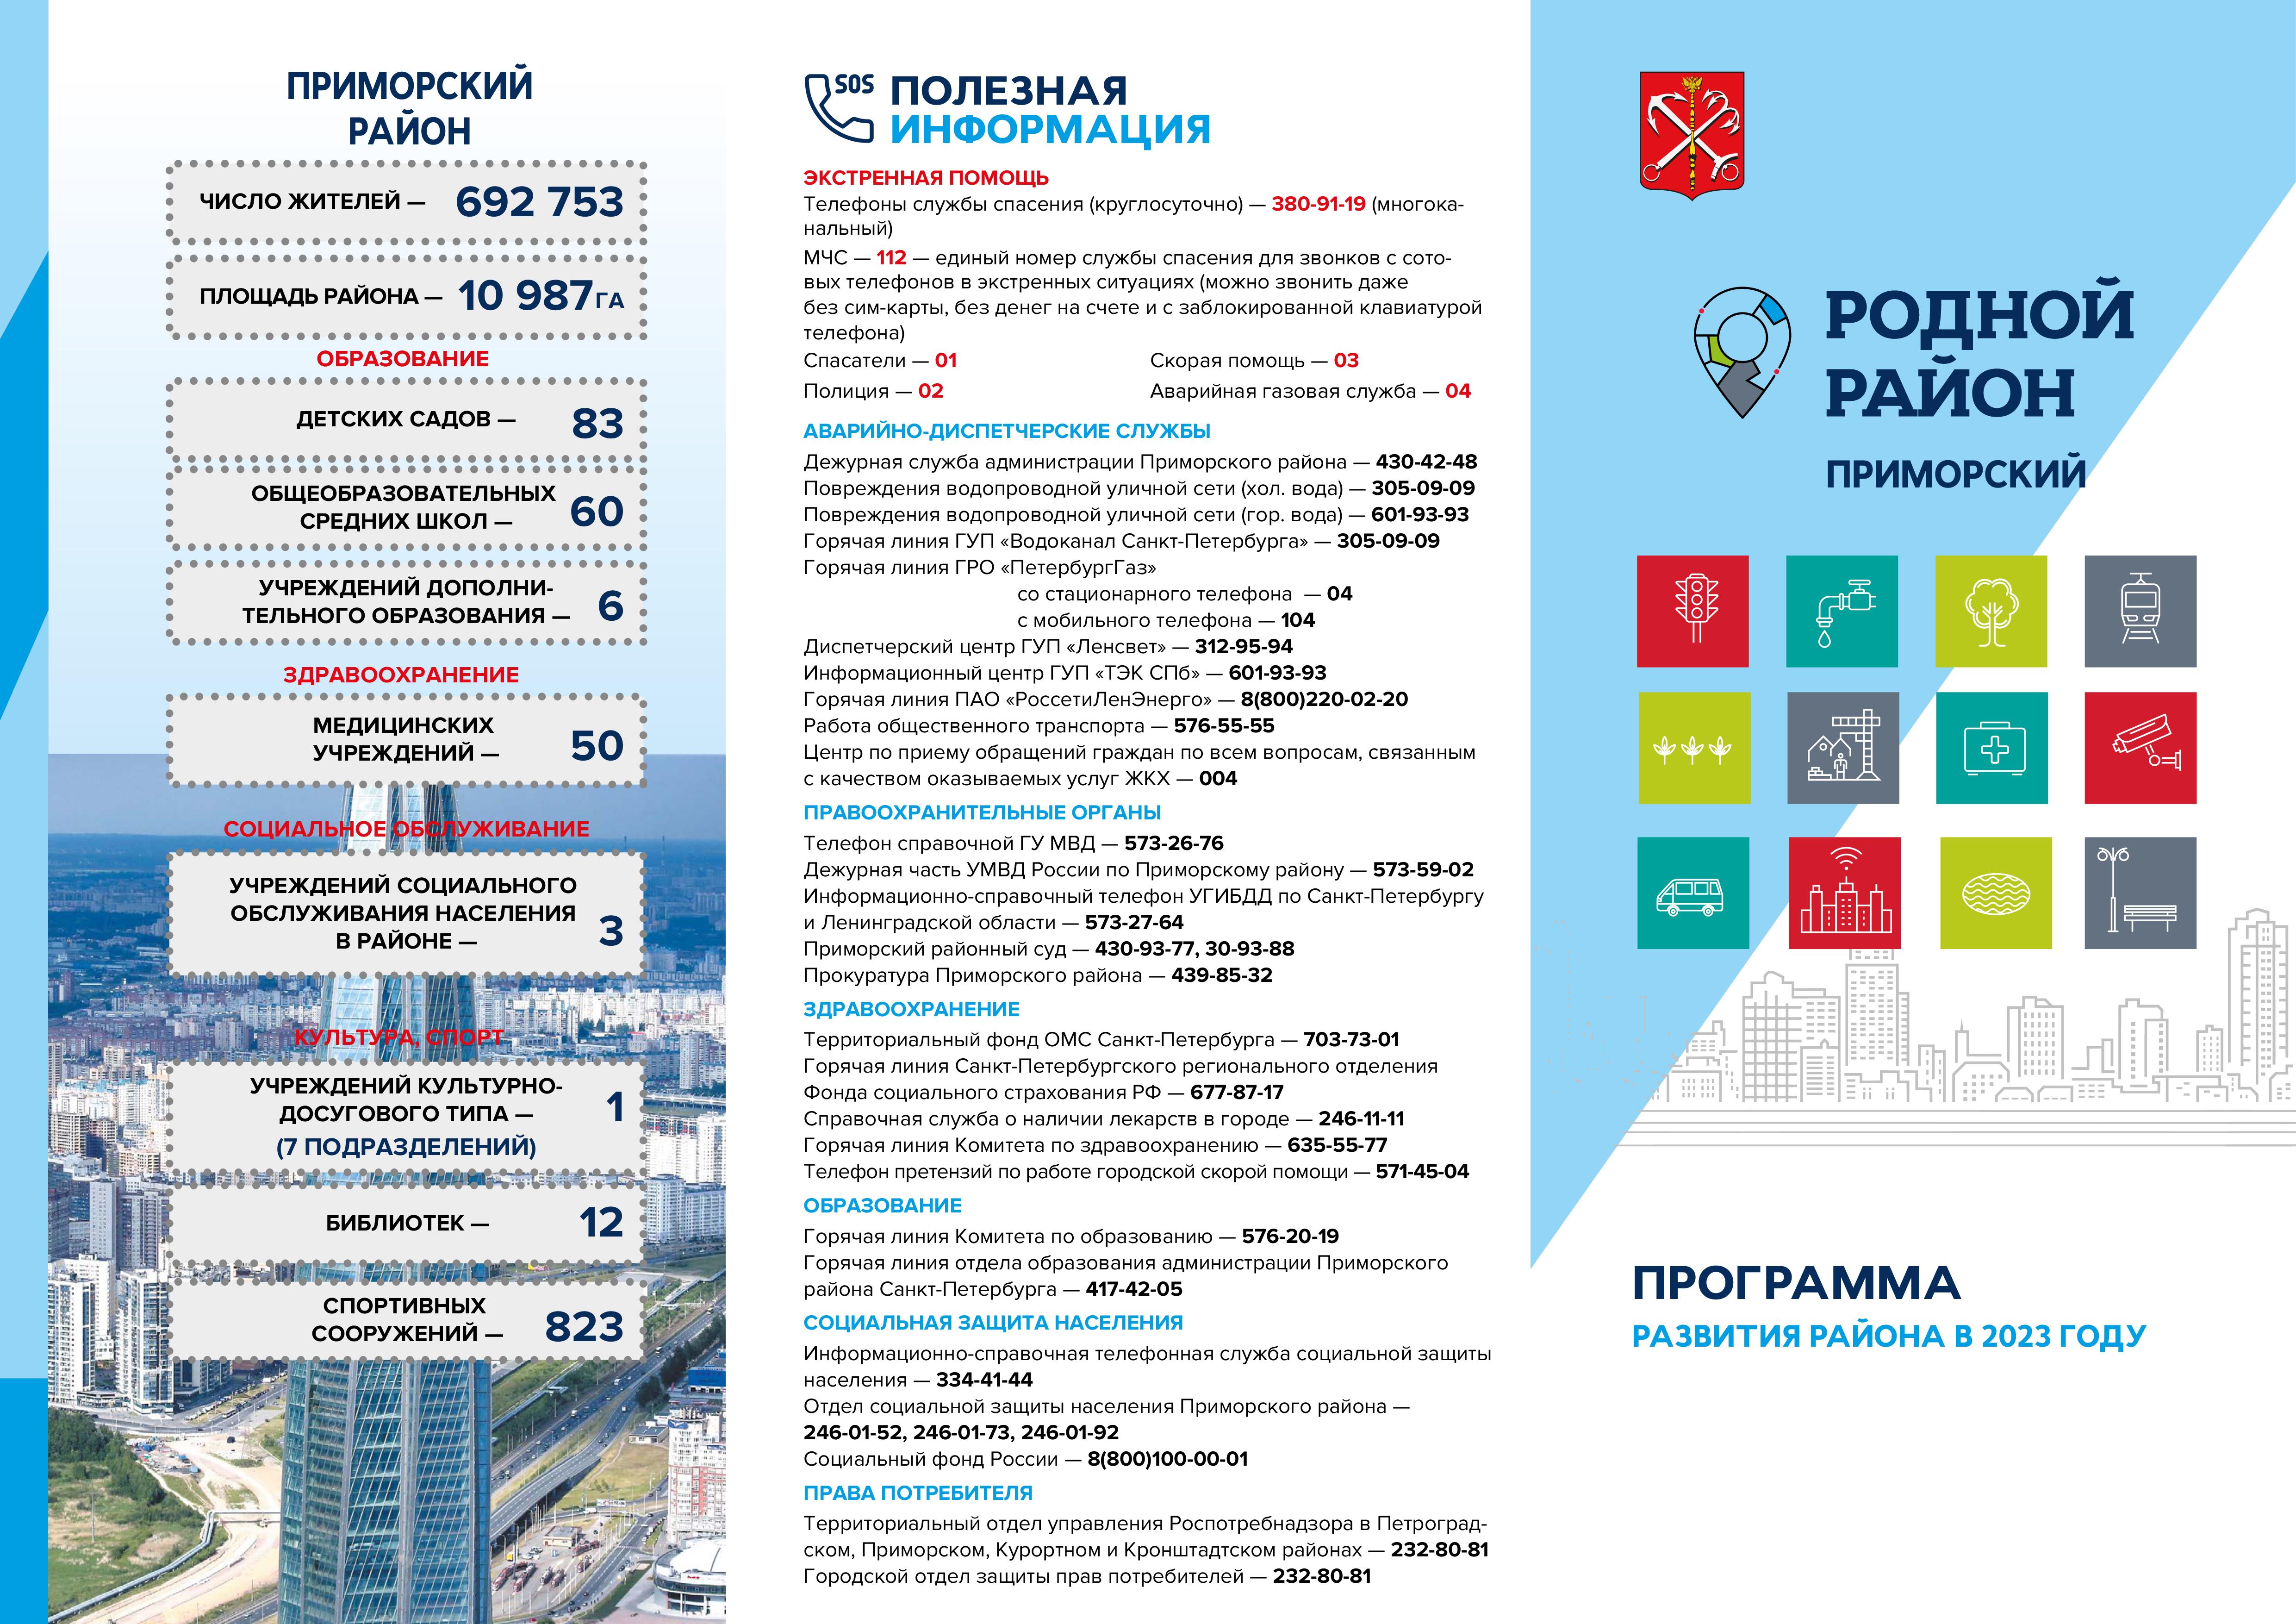 Родной район Приморский. Программа развития на 2023 год